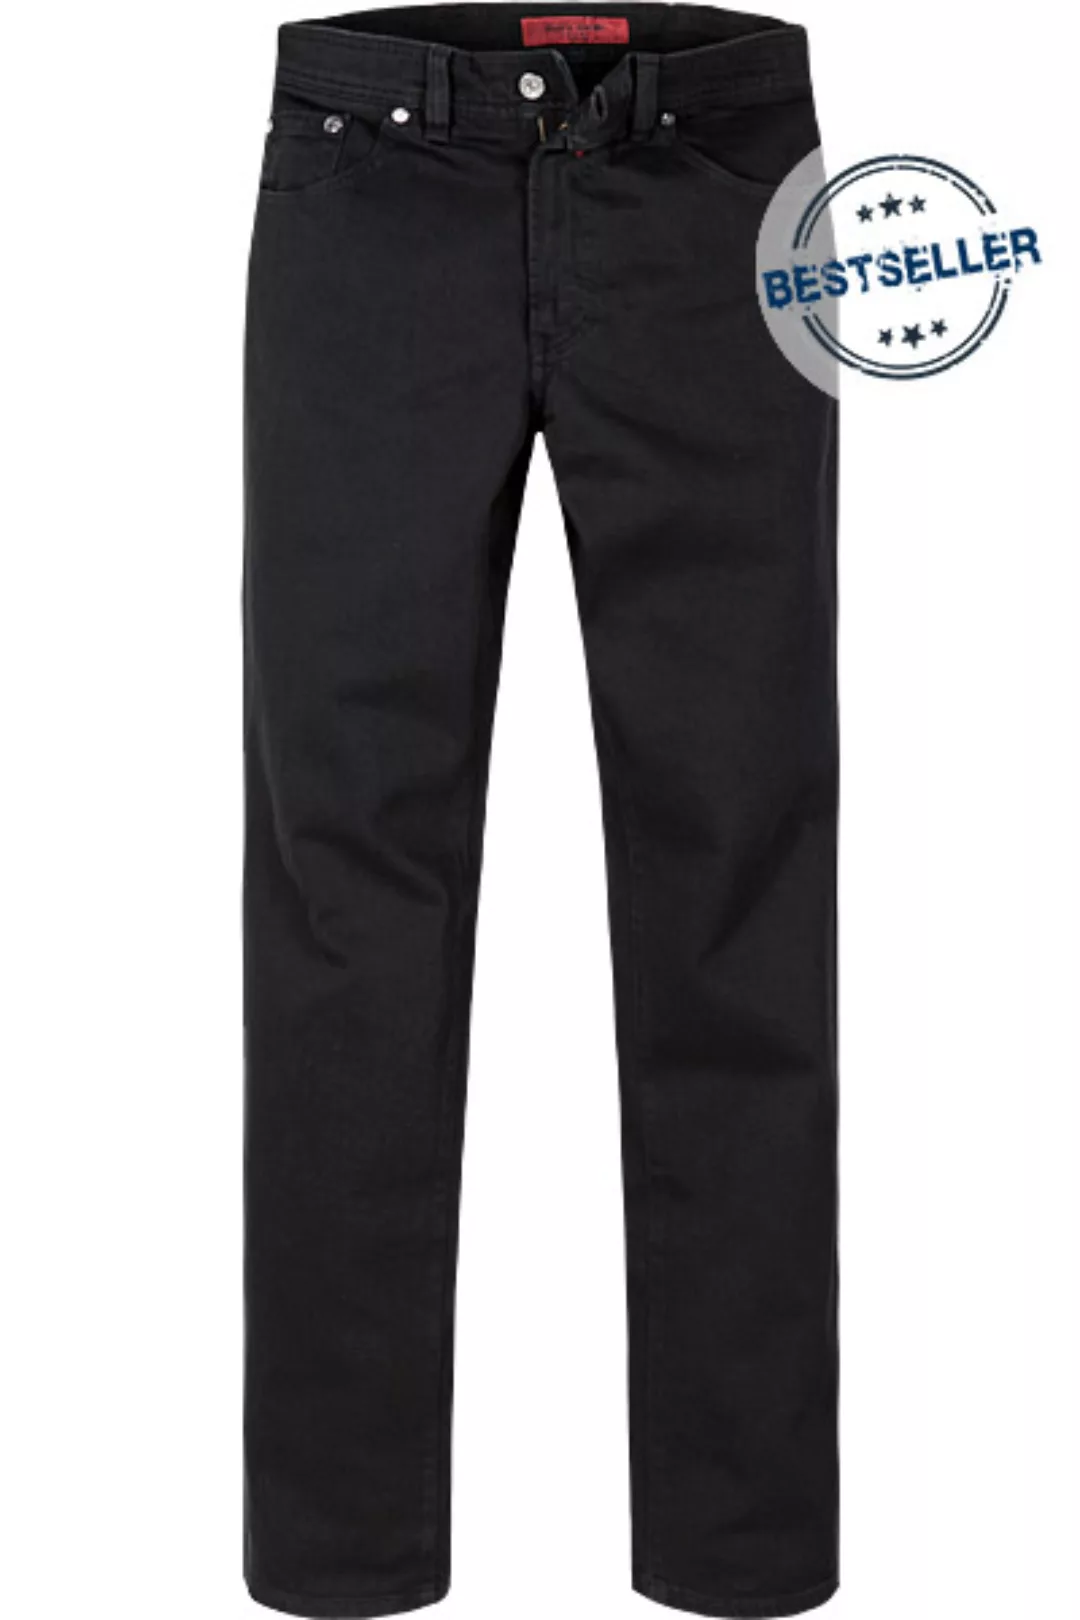 Pierre Cardin Jeans Dijon 122/3231/05 günstig online kaufen